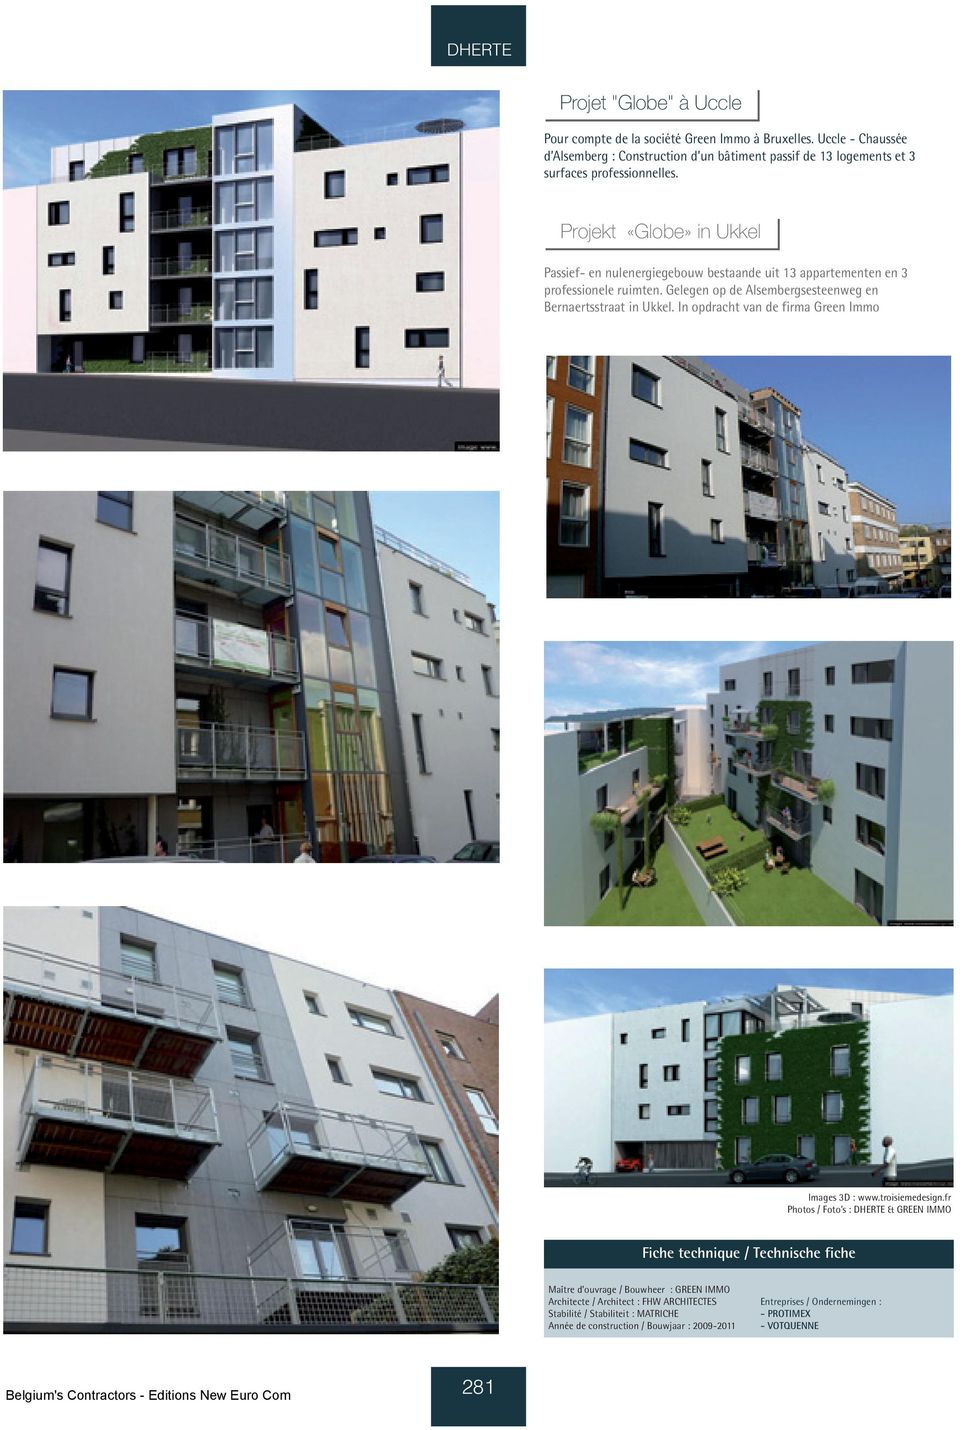 Projekt «Globe» in Ukkel Passief- en nulenergiegebouw bestaande uit 13 appartementen en 3 professionele ruimten.